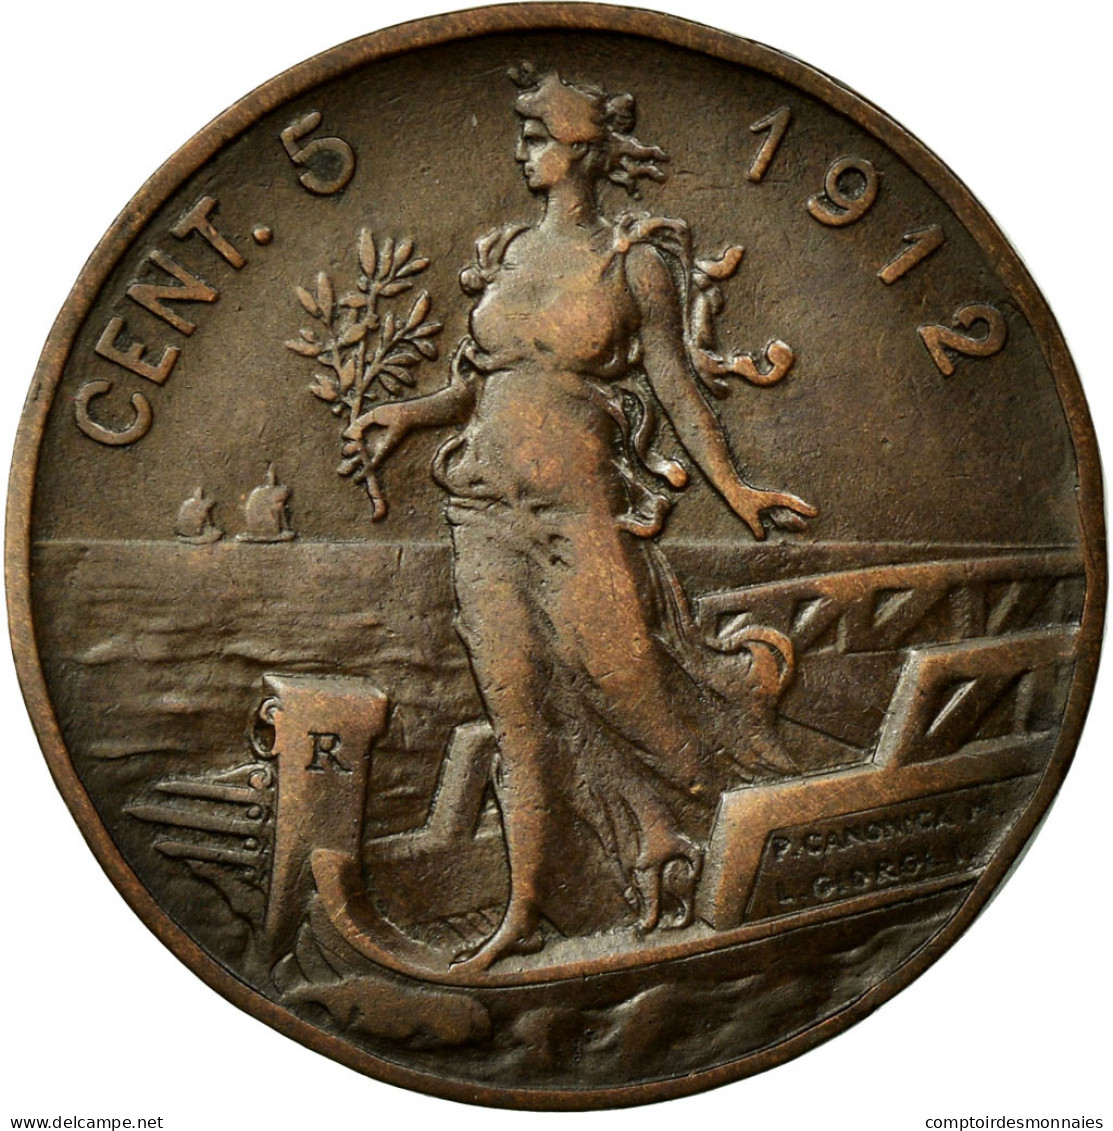 Monnaie, Italie, Vittorio Emanuele III, 5 Centesimi, 1912, Rome, TTB, Bronze - 1900-1946 : Victor Emmanuel III & Umberto II